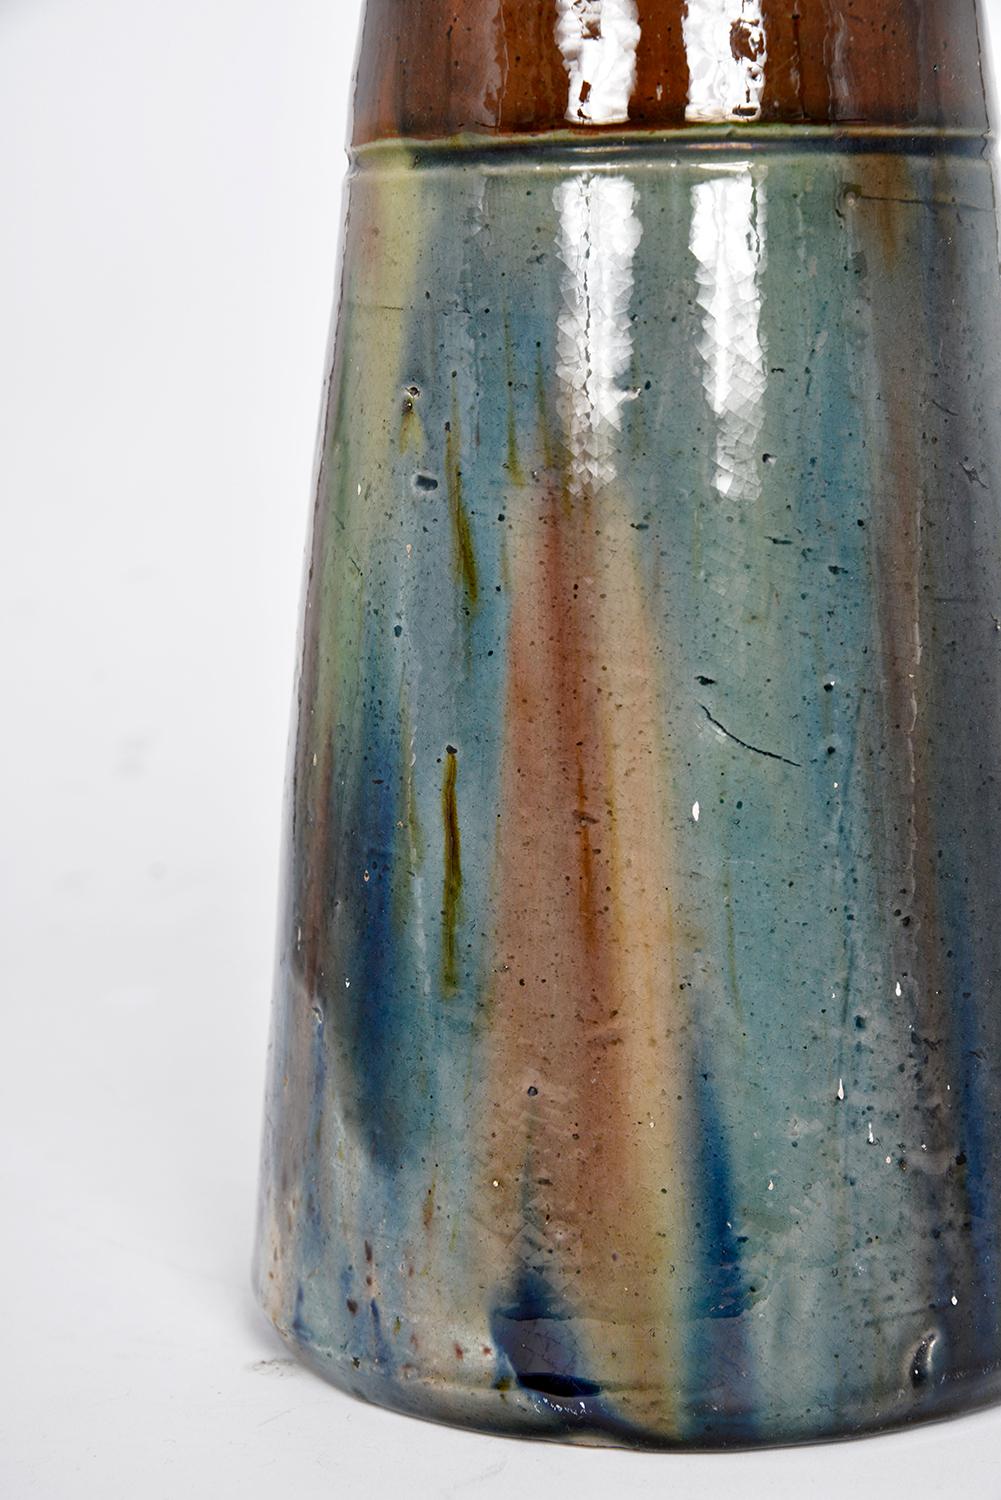 Flemish Studio Pottery Art Nouveau Drip Glazed Earthenware Vase 1900s Folk Art For Sale 4